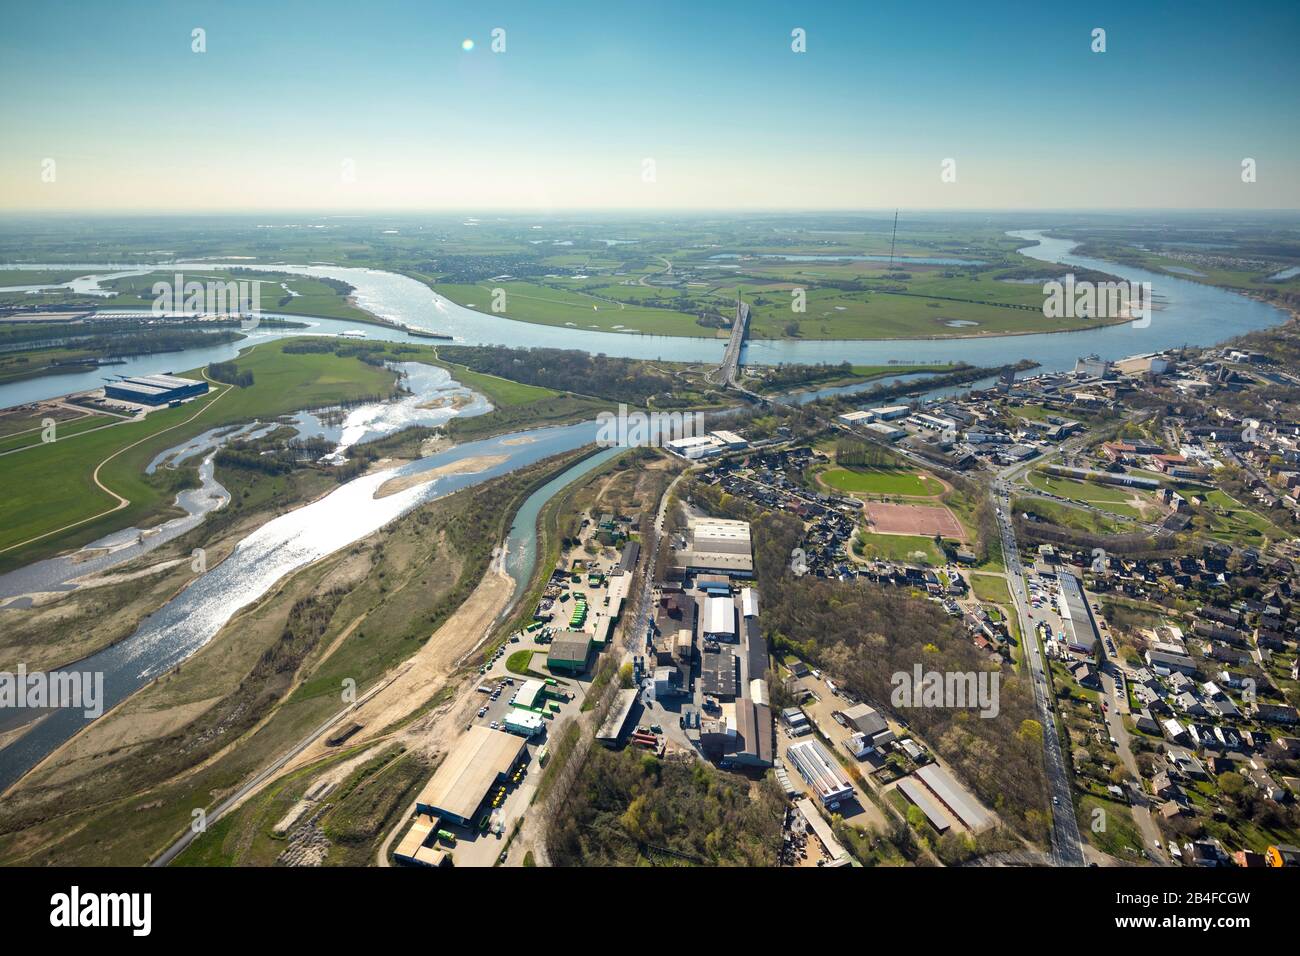 Vue aérienne de l'estuaire de Lippe entre Lippeschlösschen et le pont du Rhin comme un paysage de lac dans le sud de Wesel sur le Bas-Rhin dans la région de la Ruhr dans l'état fédéral de Rhénanie-du-Nord-Westphalie, Allemagne Banque D'Images